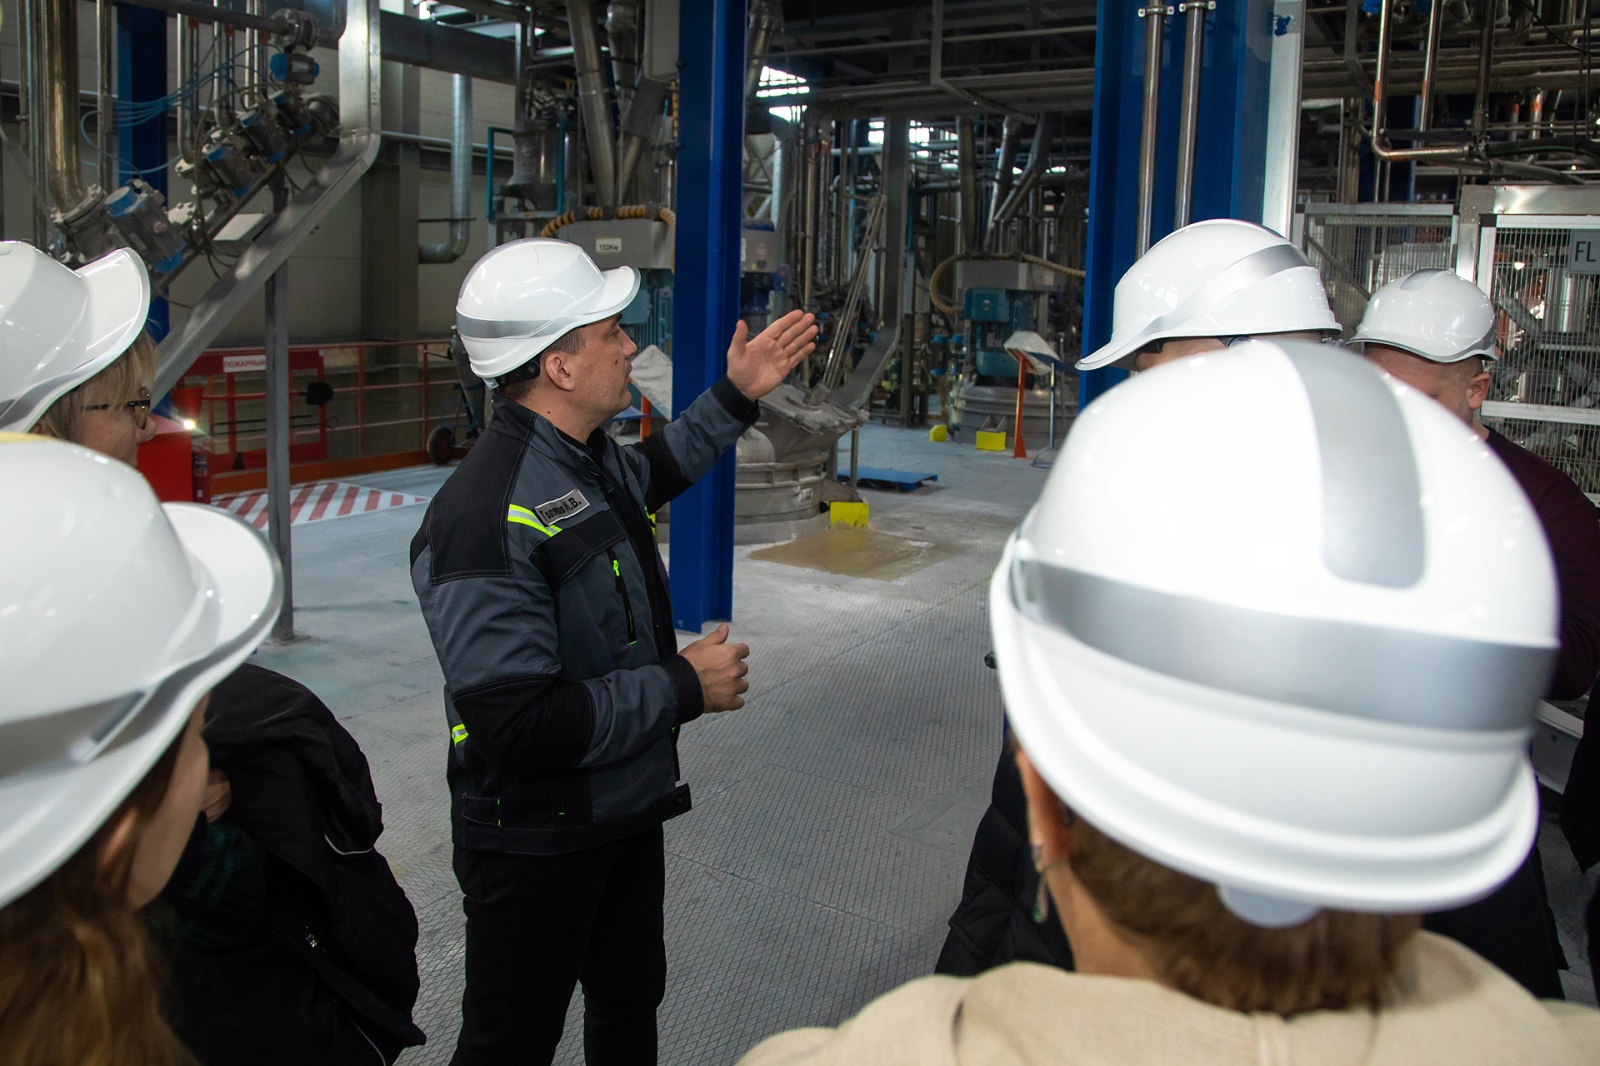 Представители отрасли дорожно-транспортного строительства посетили завод ВМП